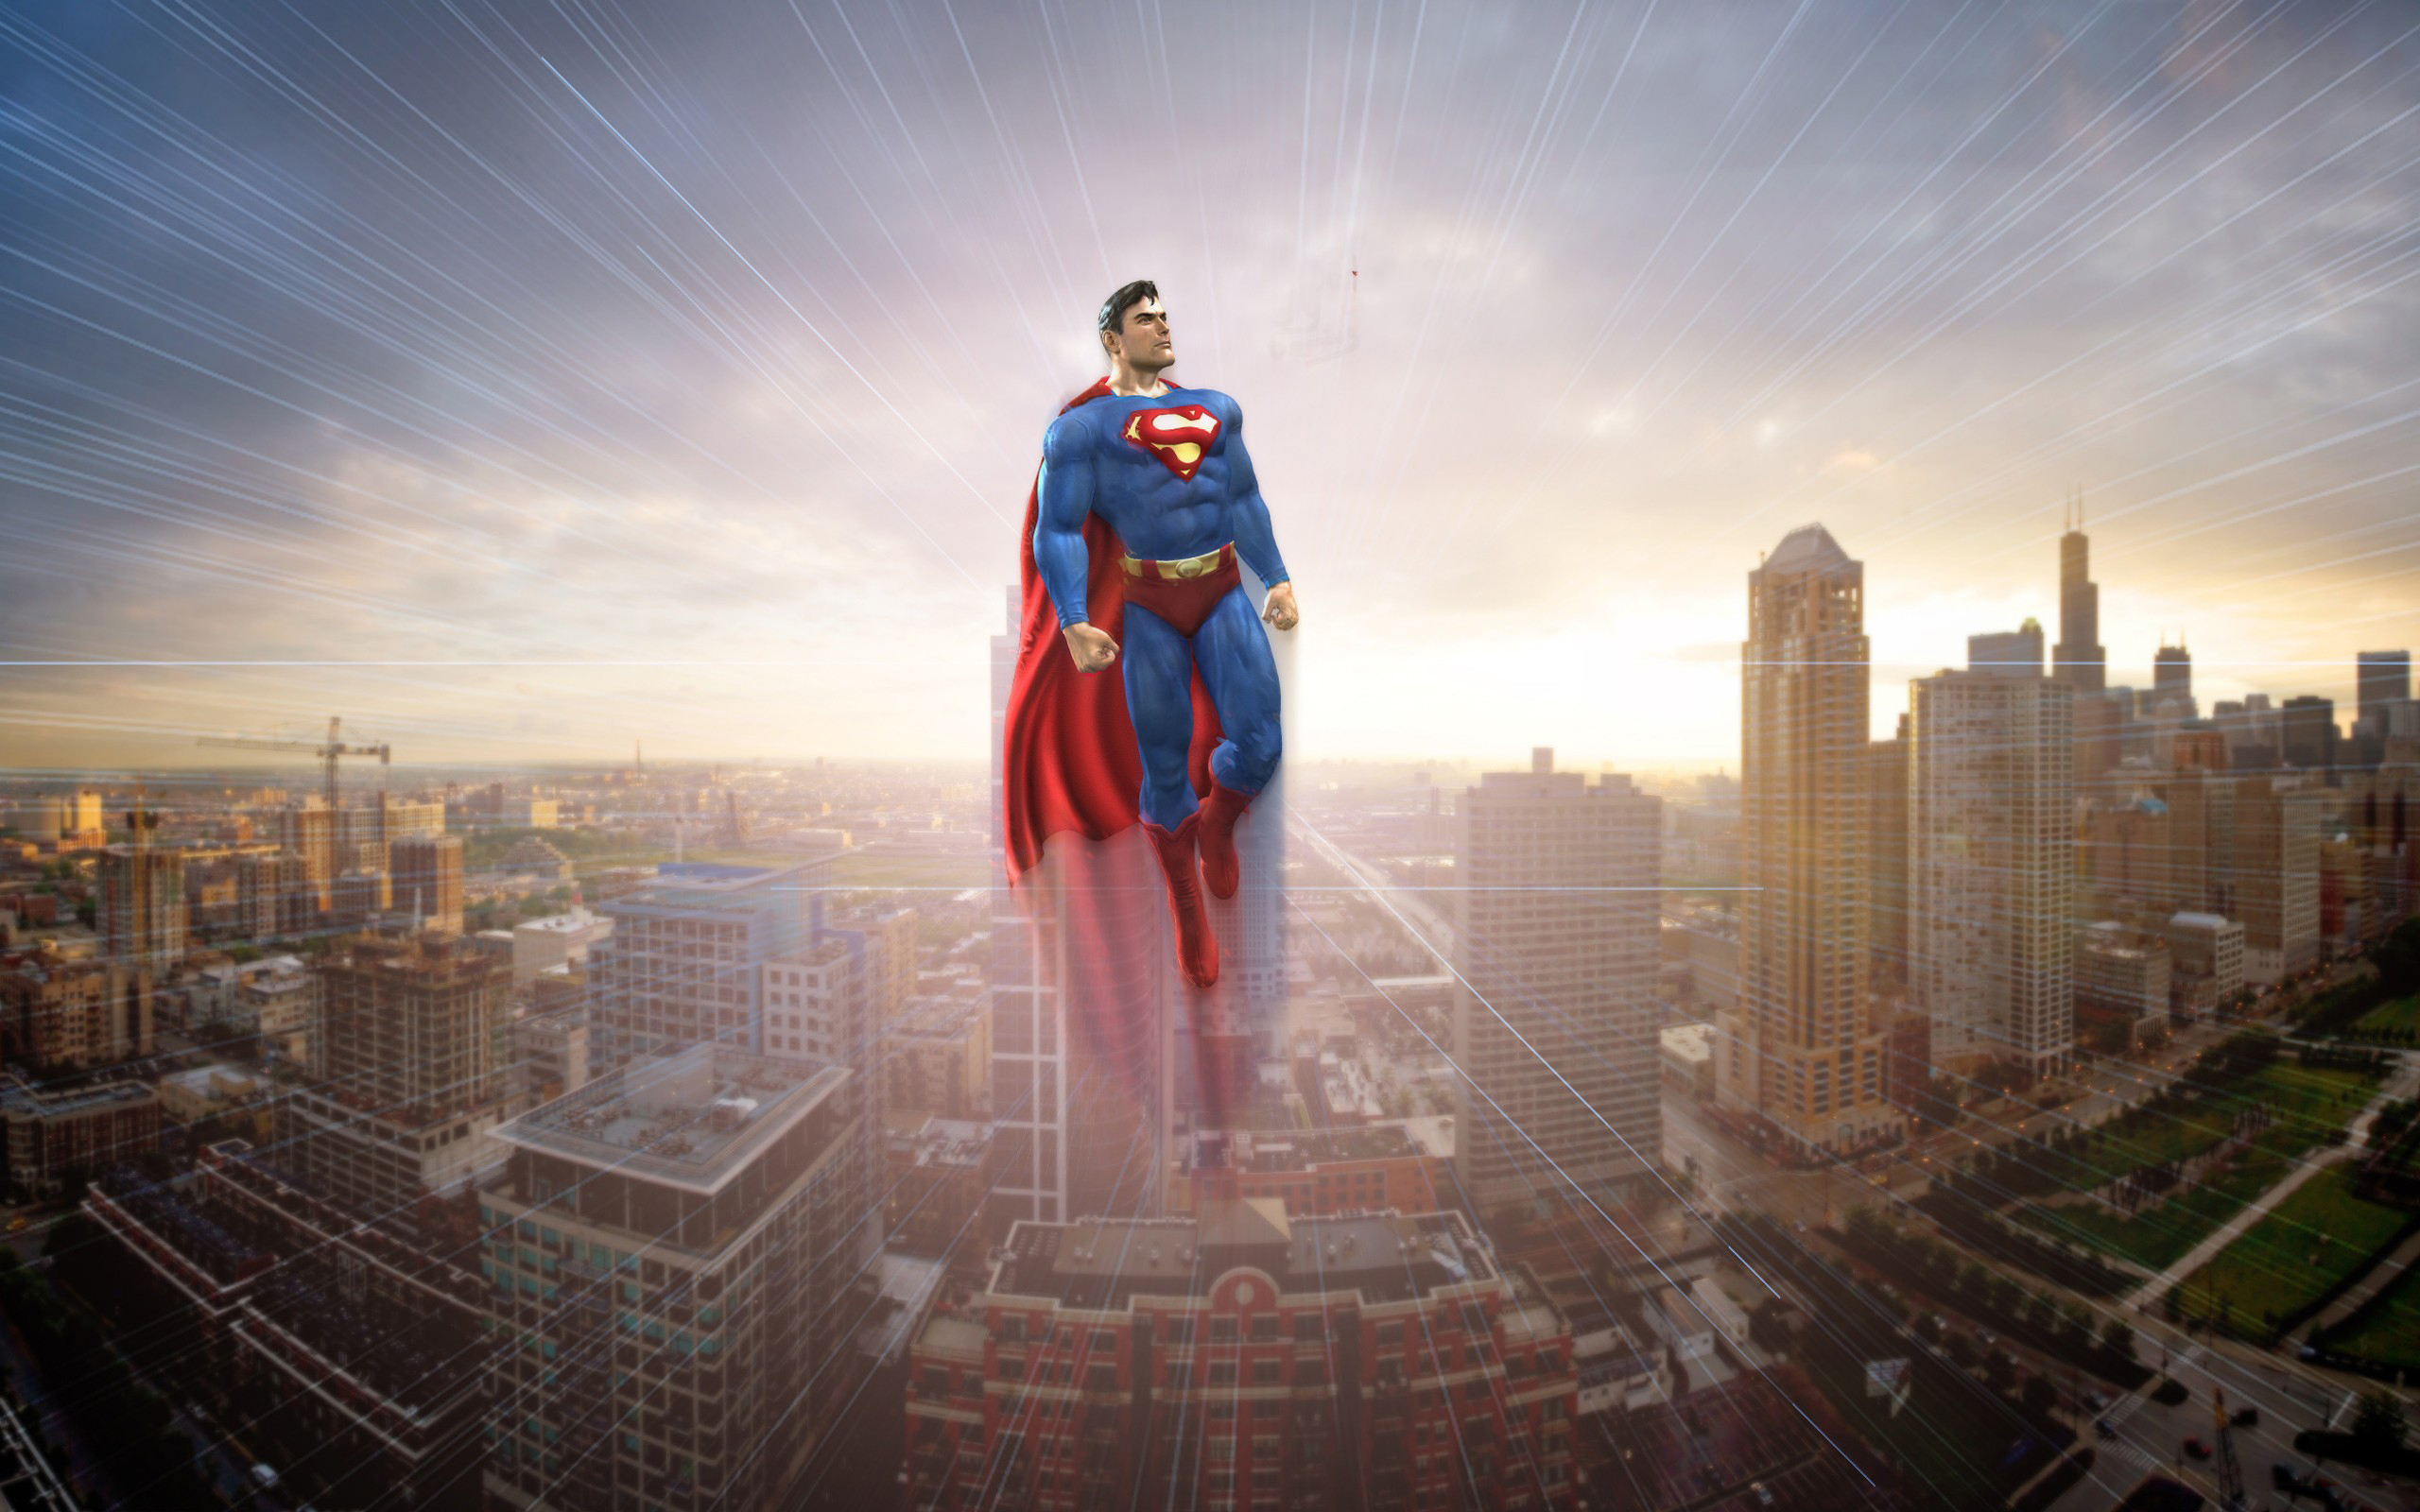 Is super heroes. Супермен. Супергерой. Супергерой в городе. Супермен на фоне города.